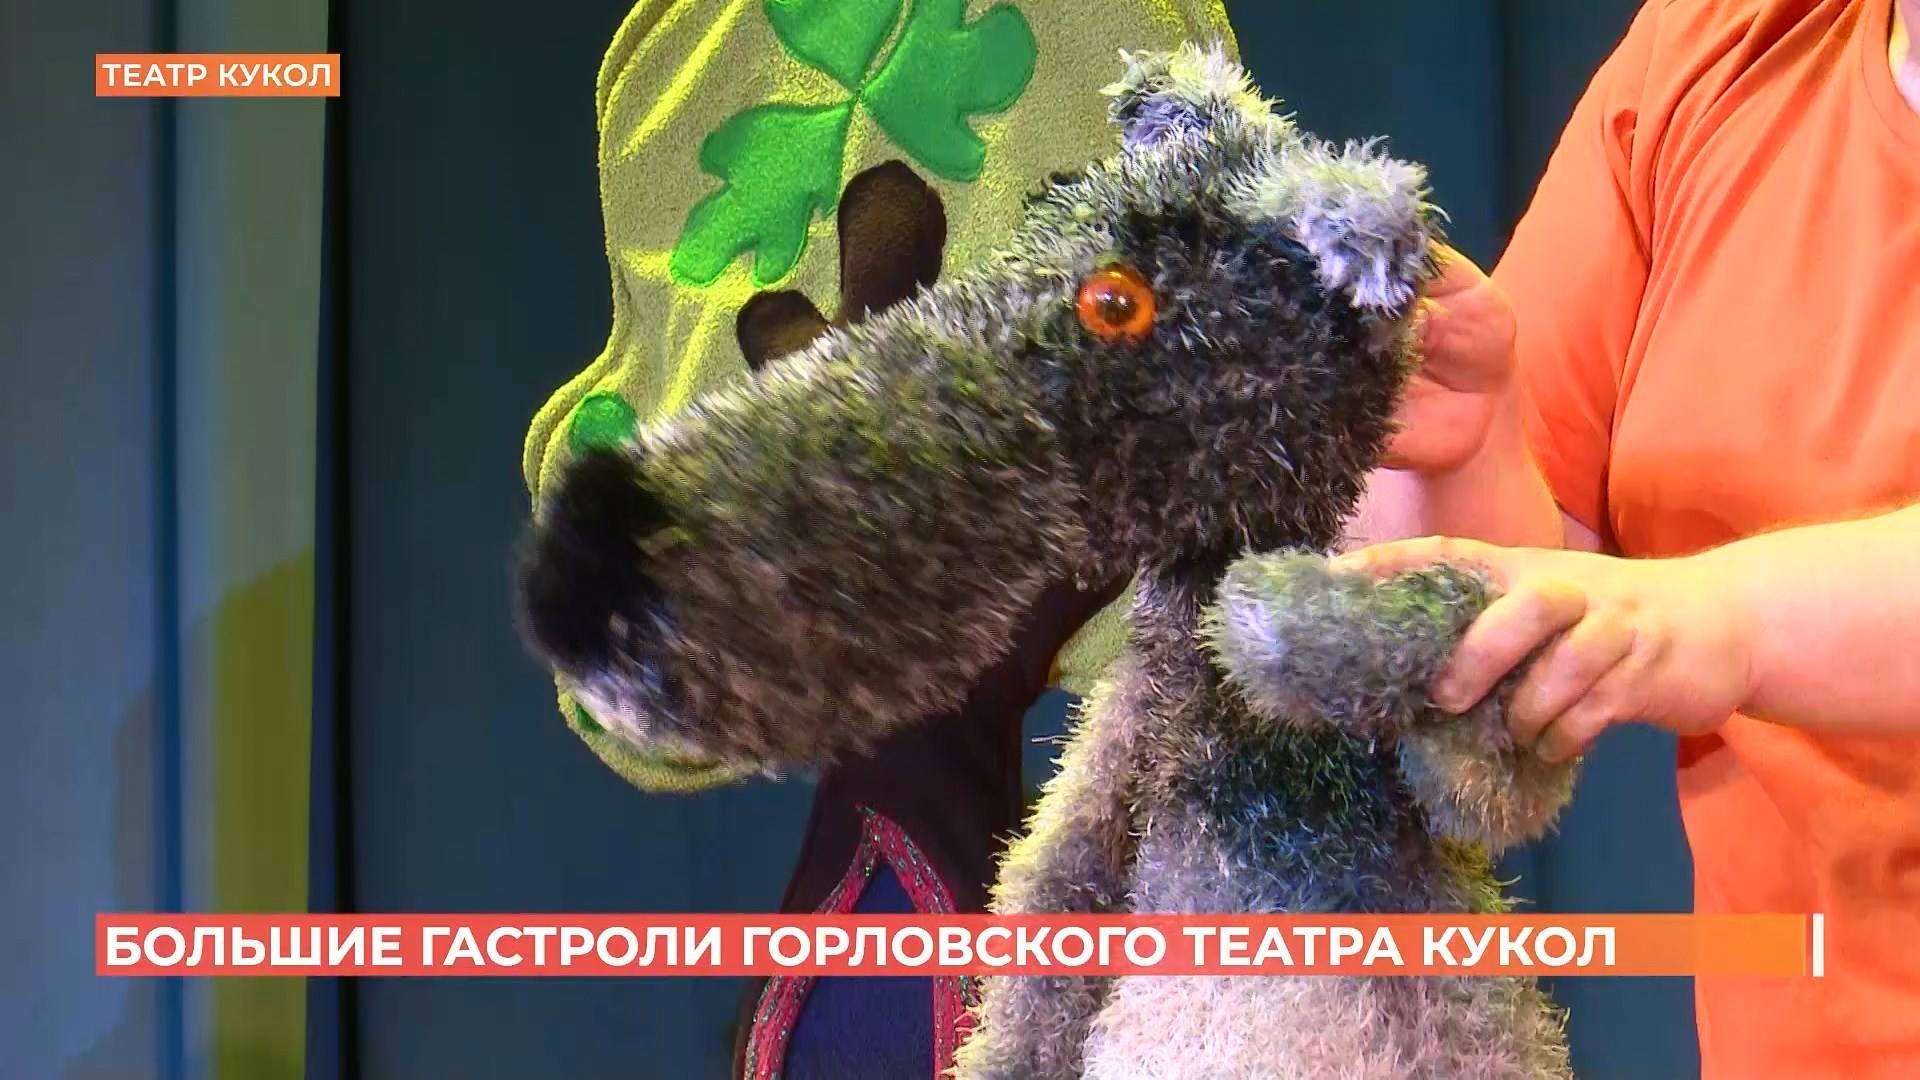 Горловский театр кукол впервые отправился в большой гастрольный тур и приехал в Ростов